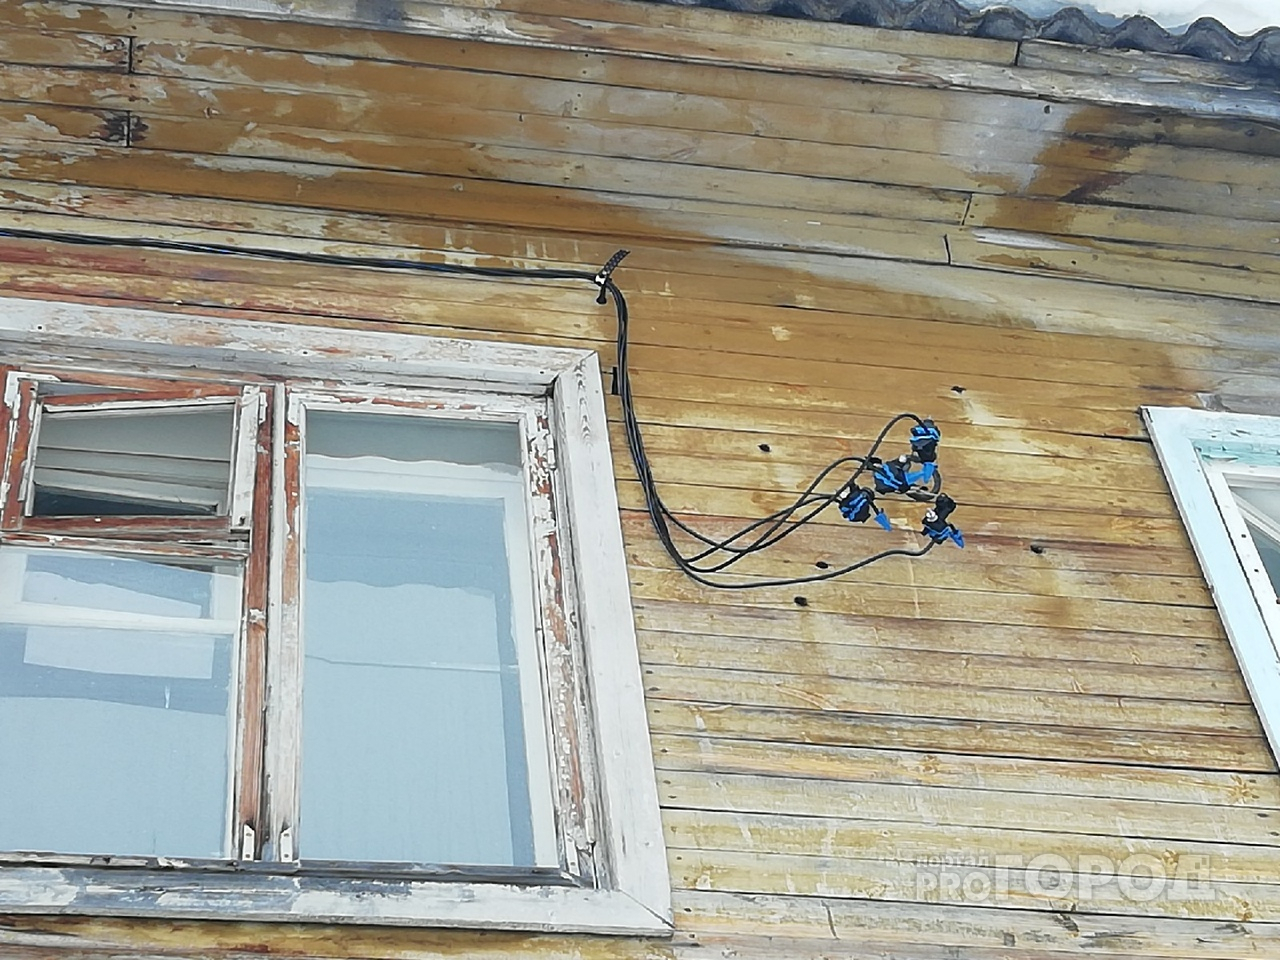 В Сыктывкаре из-за ошибки электрика у жильцов дома сгорела вся бытовая техника